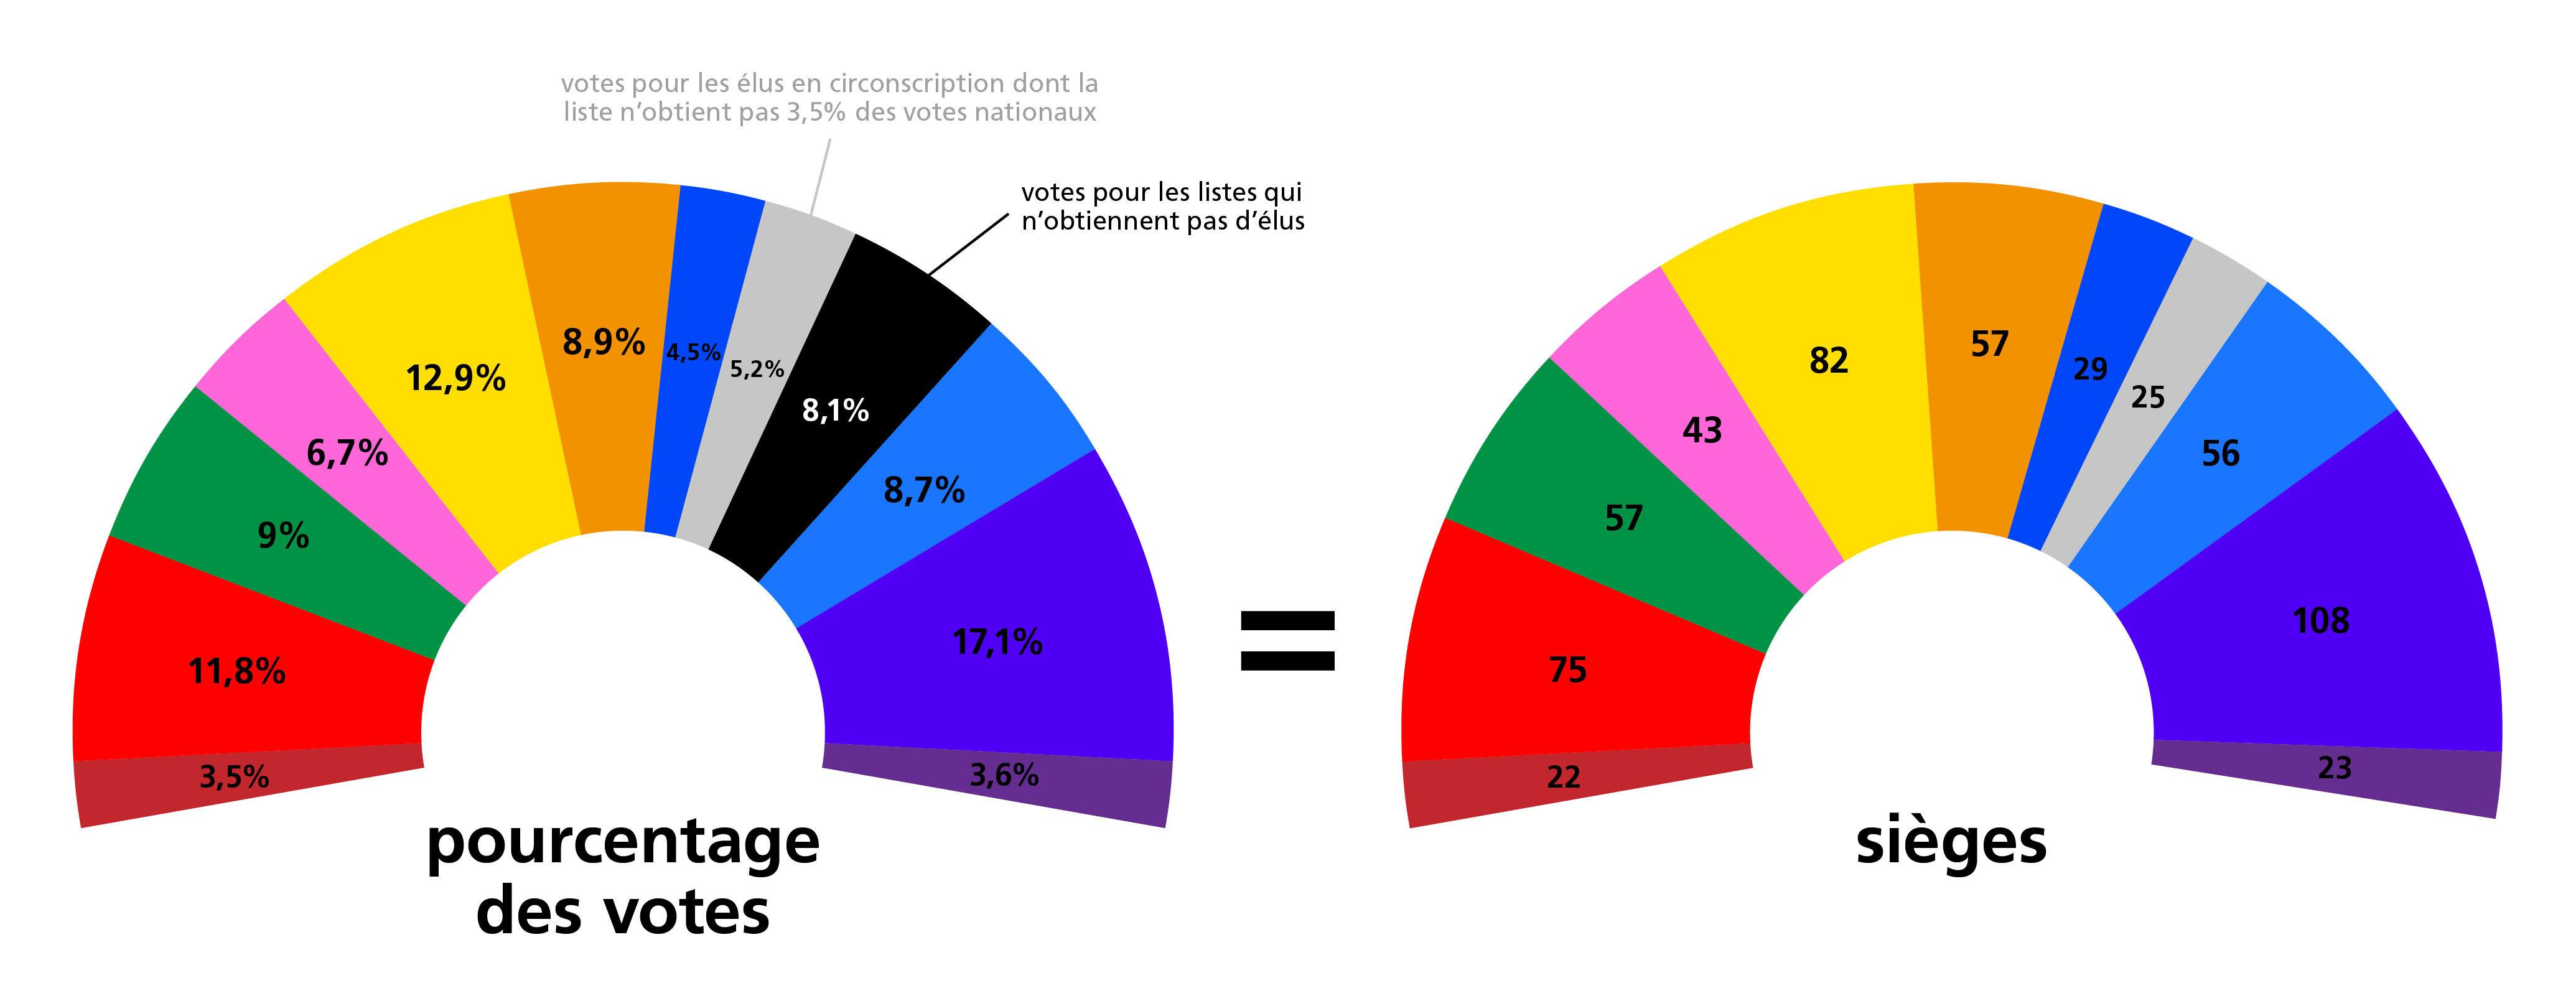 Rapport entre le pourcentage des votes et les sièges attribués